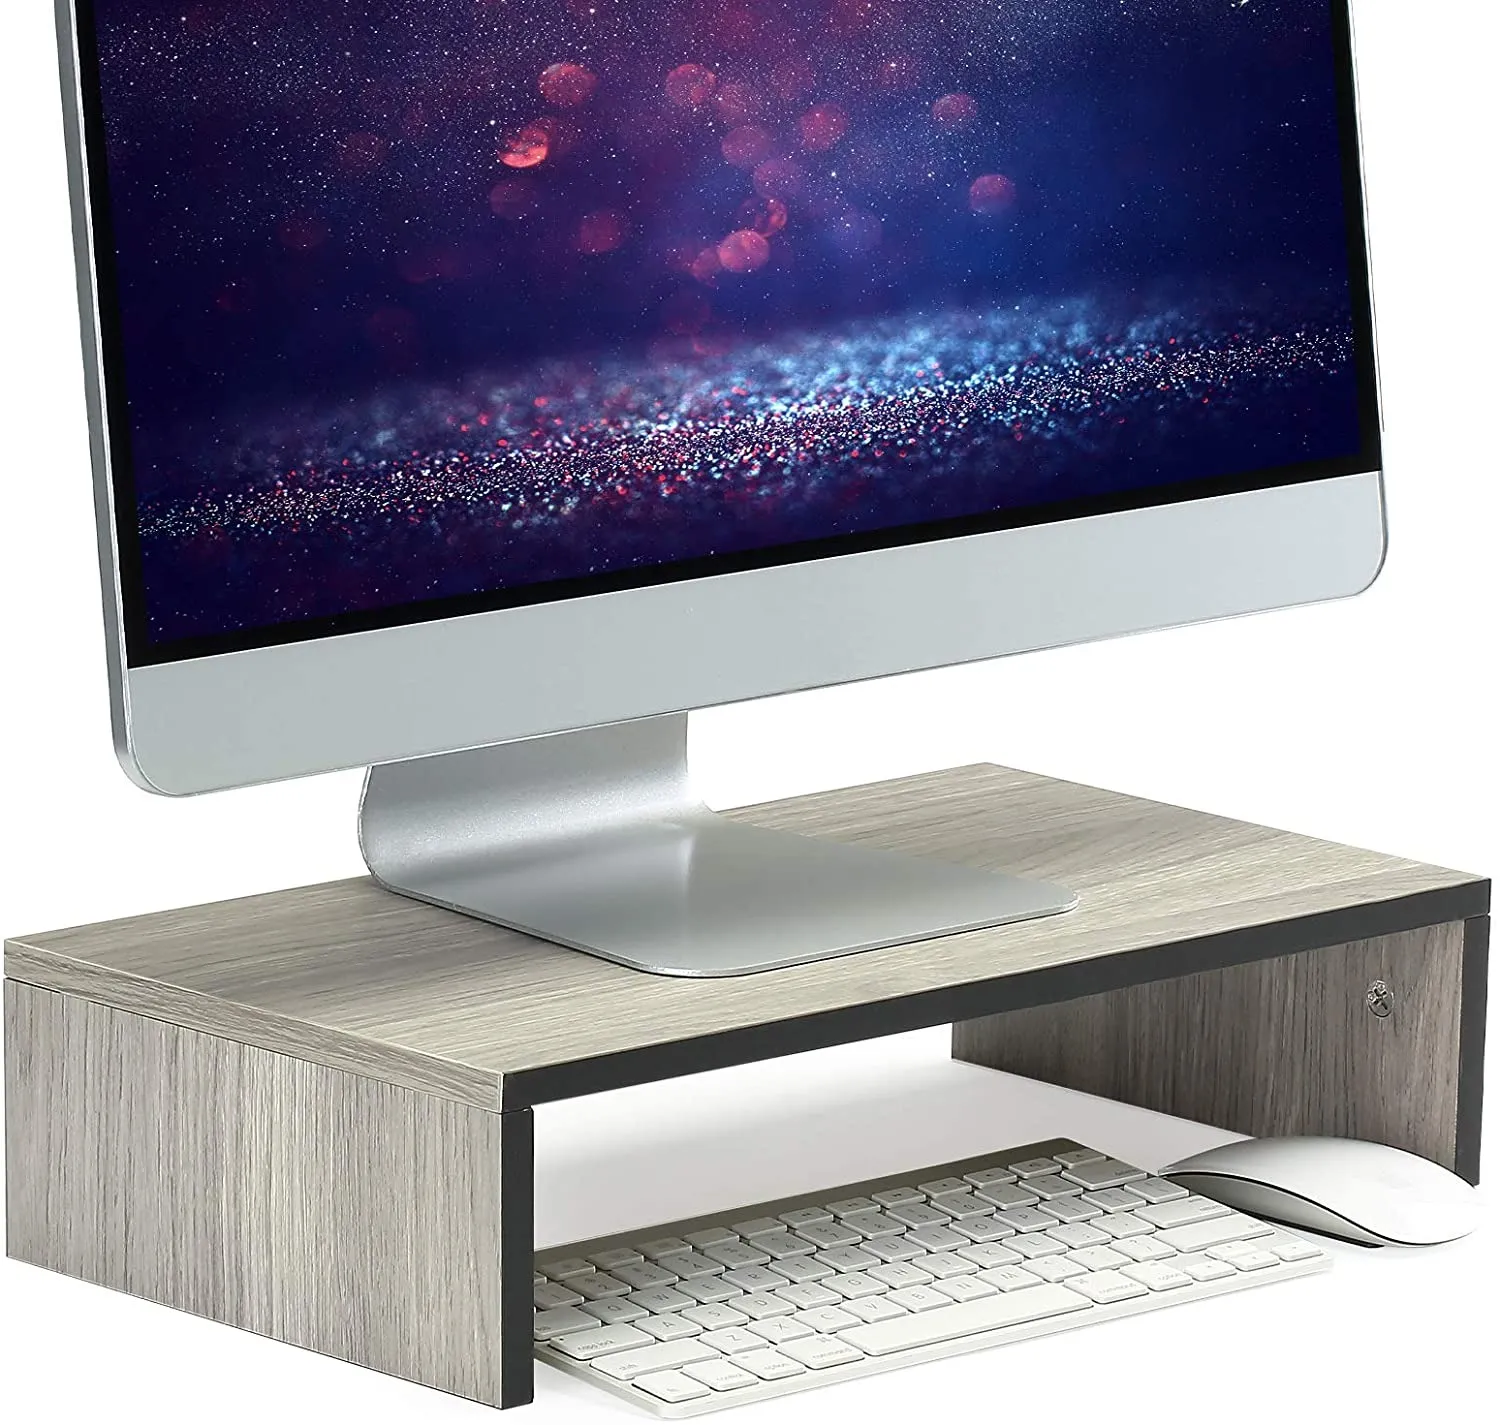 Soporte elevador de madera para pantalla de Samdi, para ordenador de mesa,  portátil, monitores, televisores o impresoras